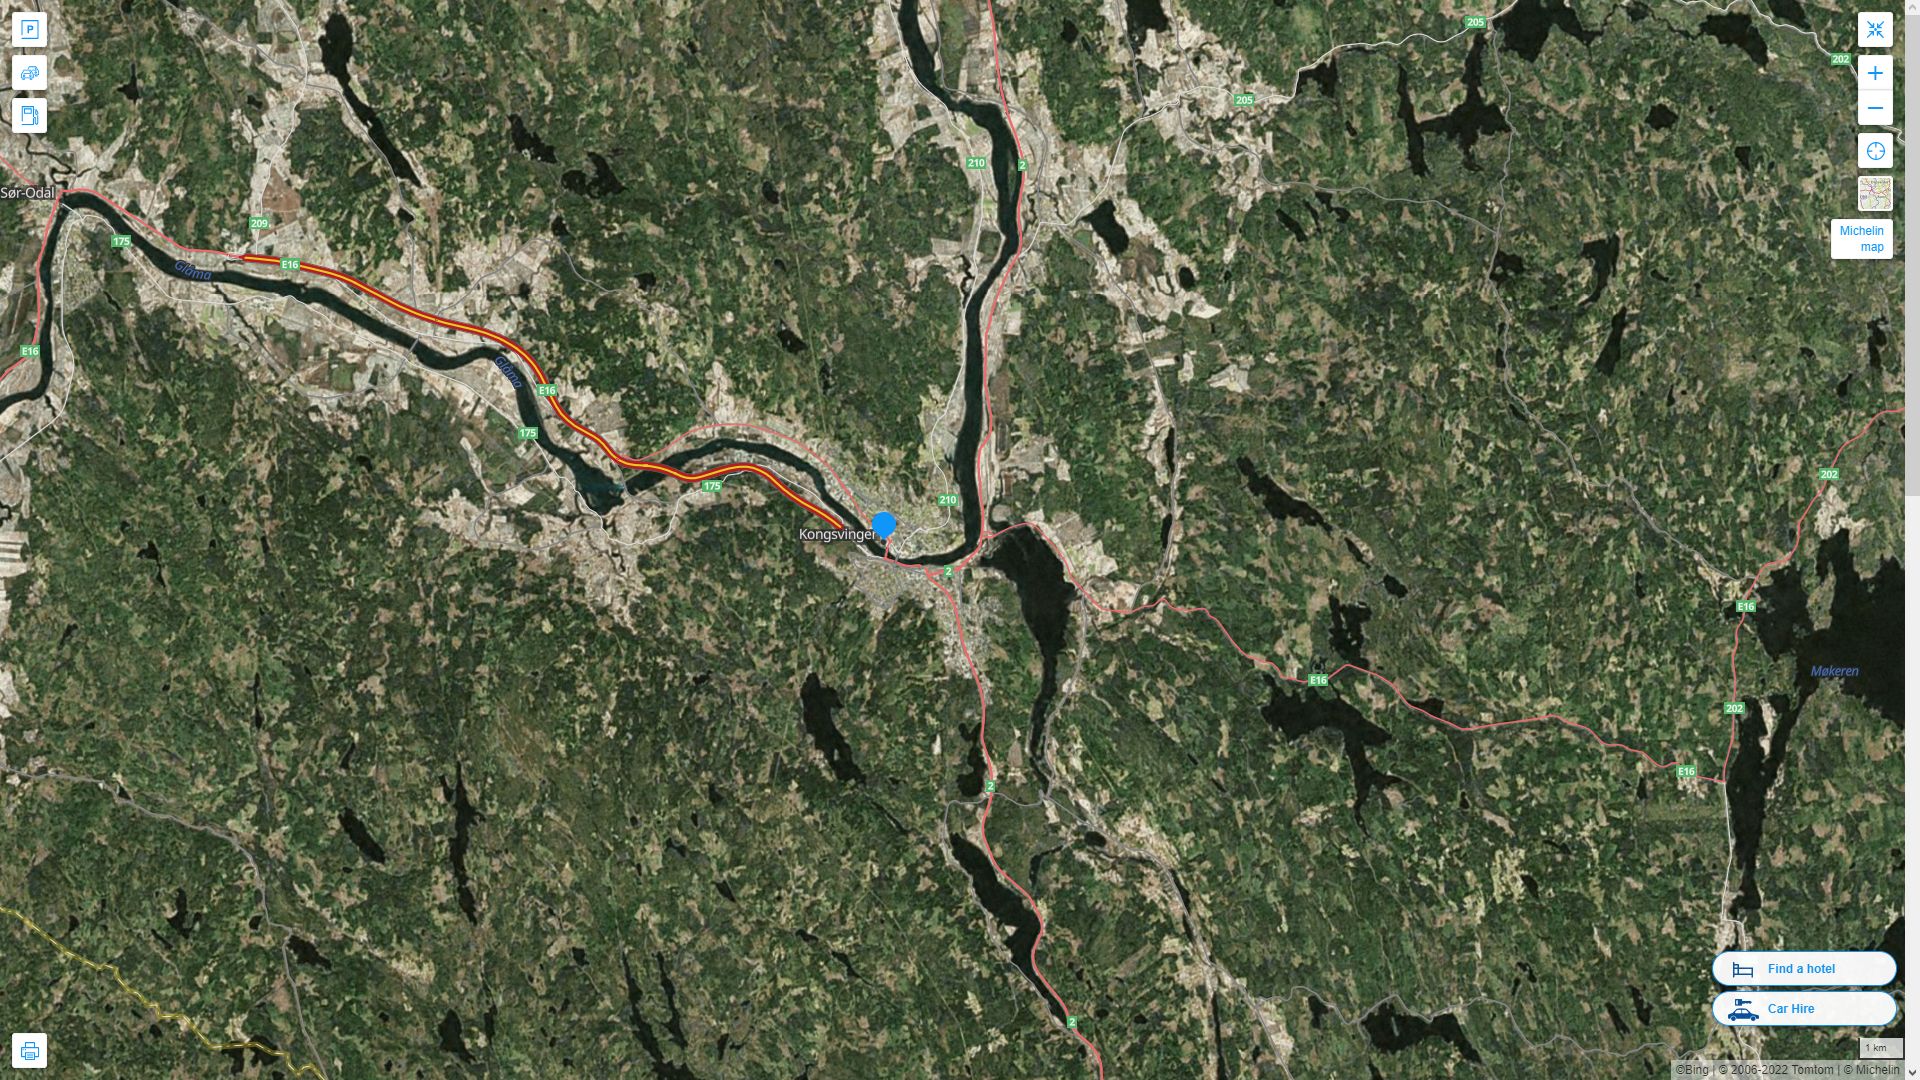 Kongsvinger Norvege Autoroute et carte routiere avec vue satellite